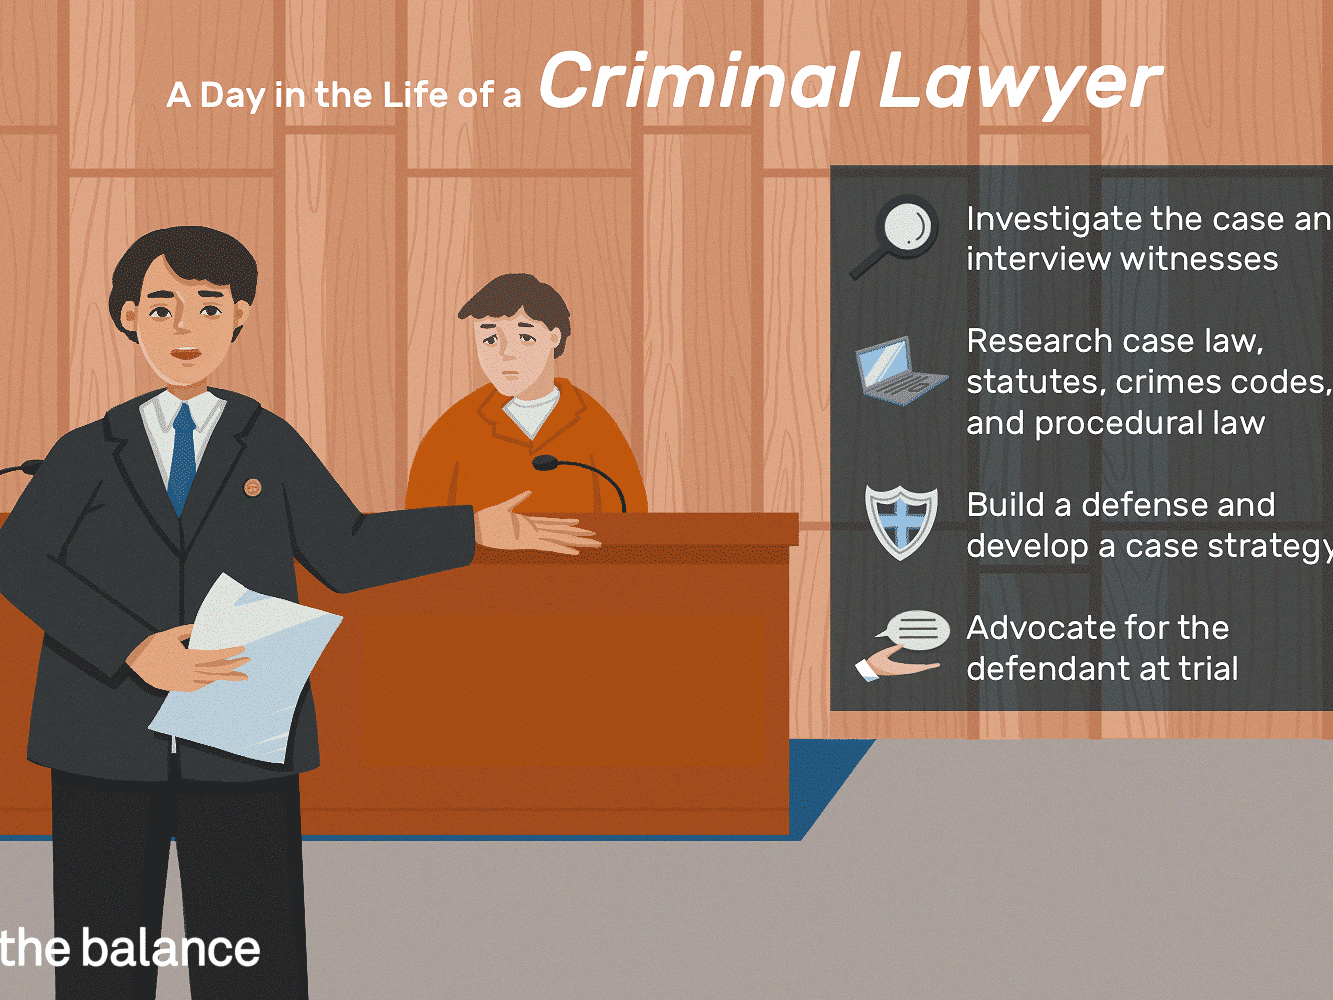 criminal-lawyer-job-responsibilities-2